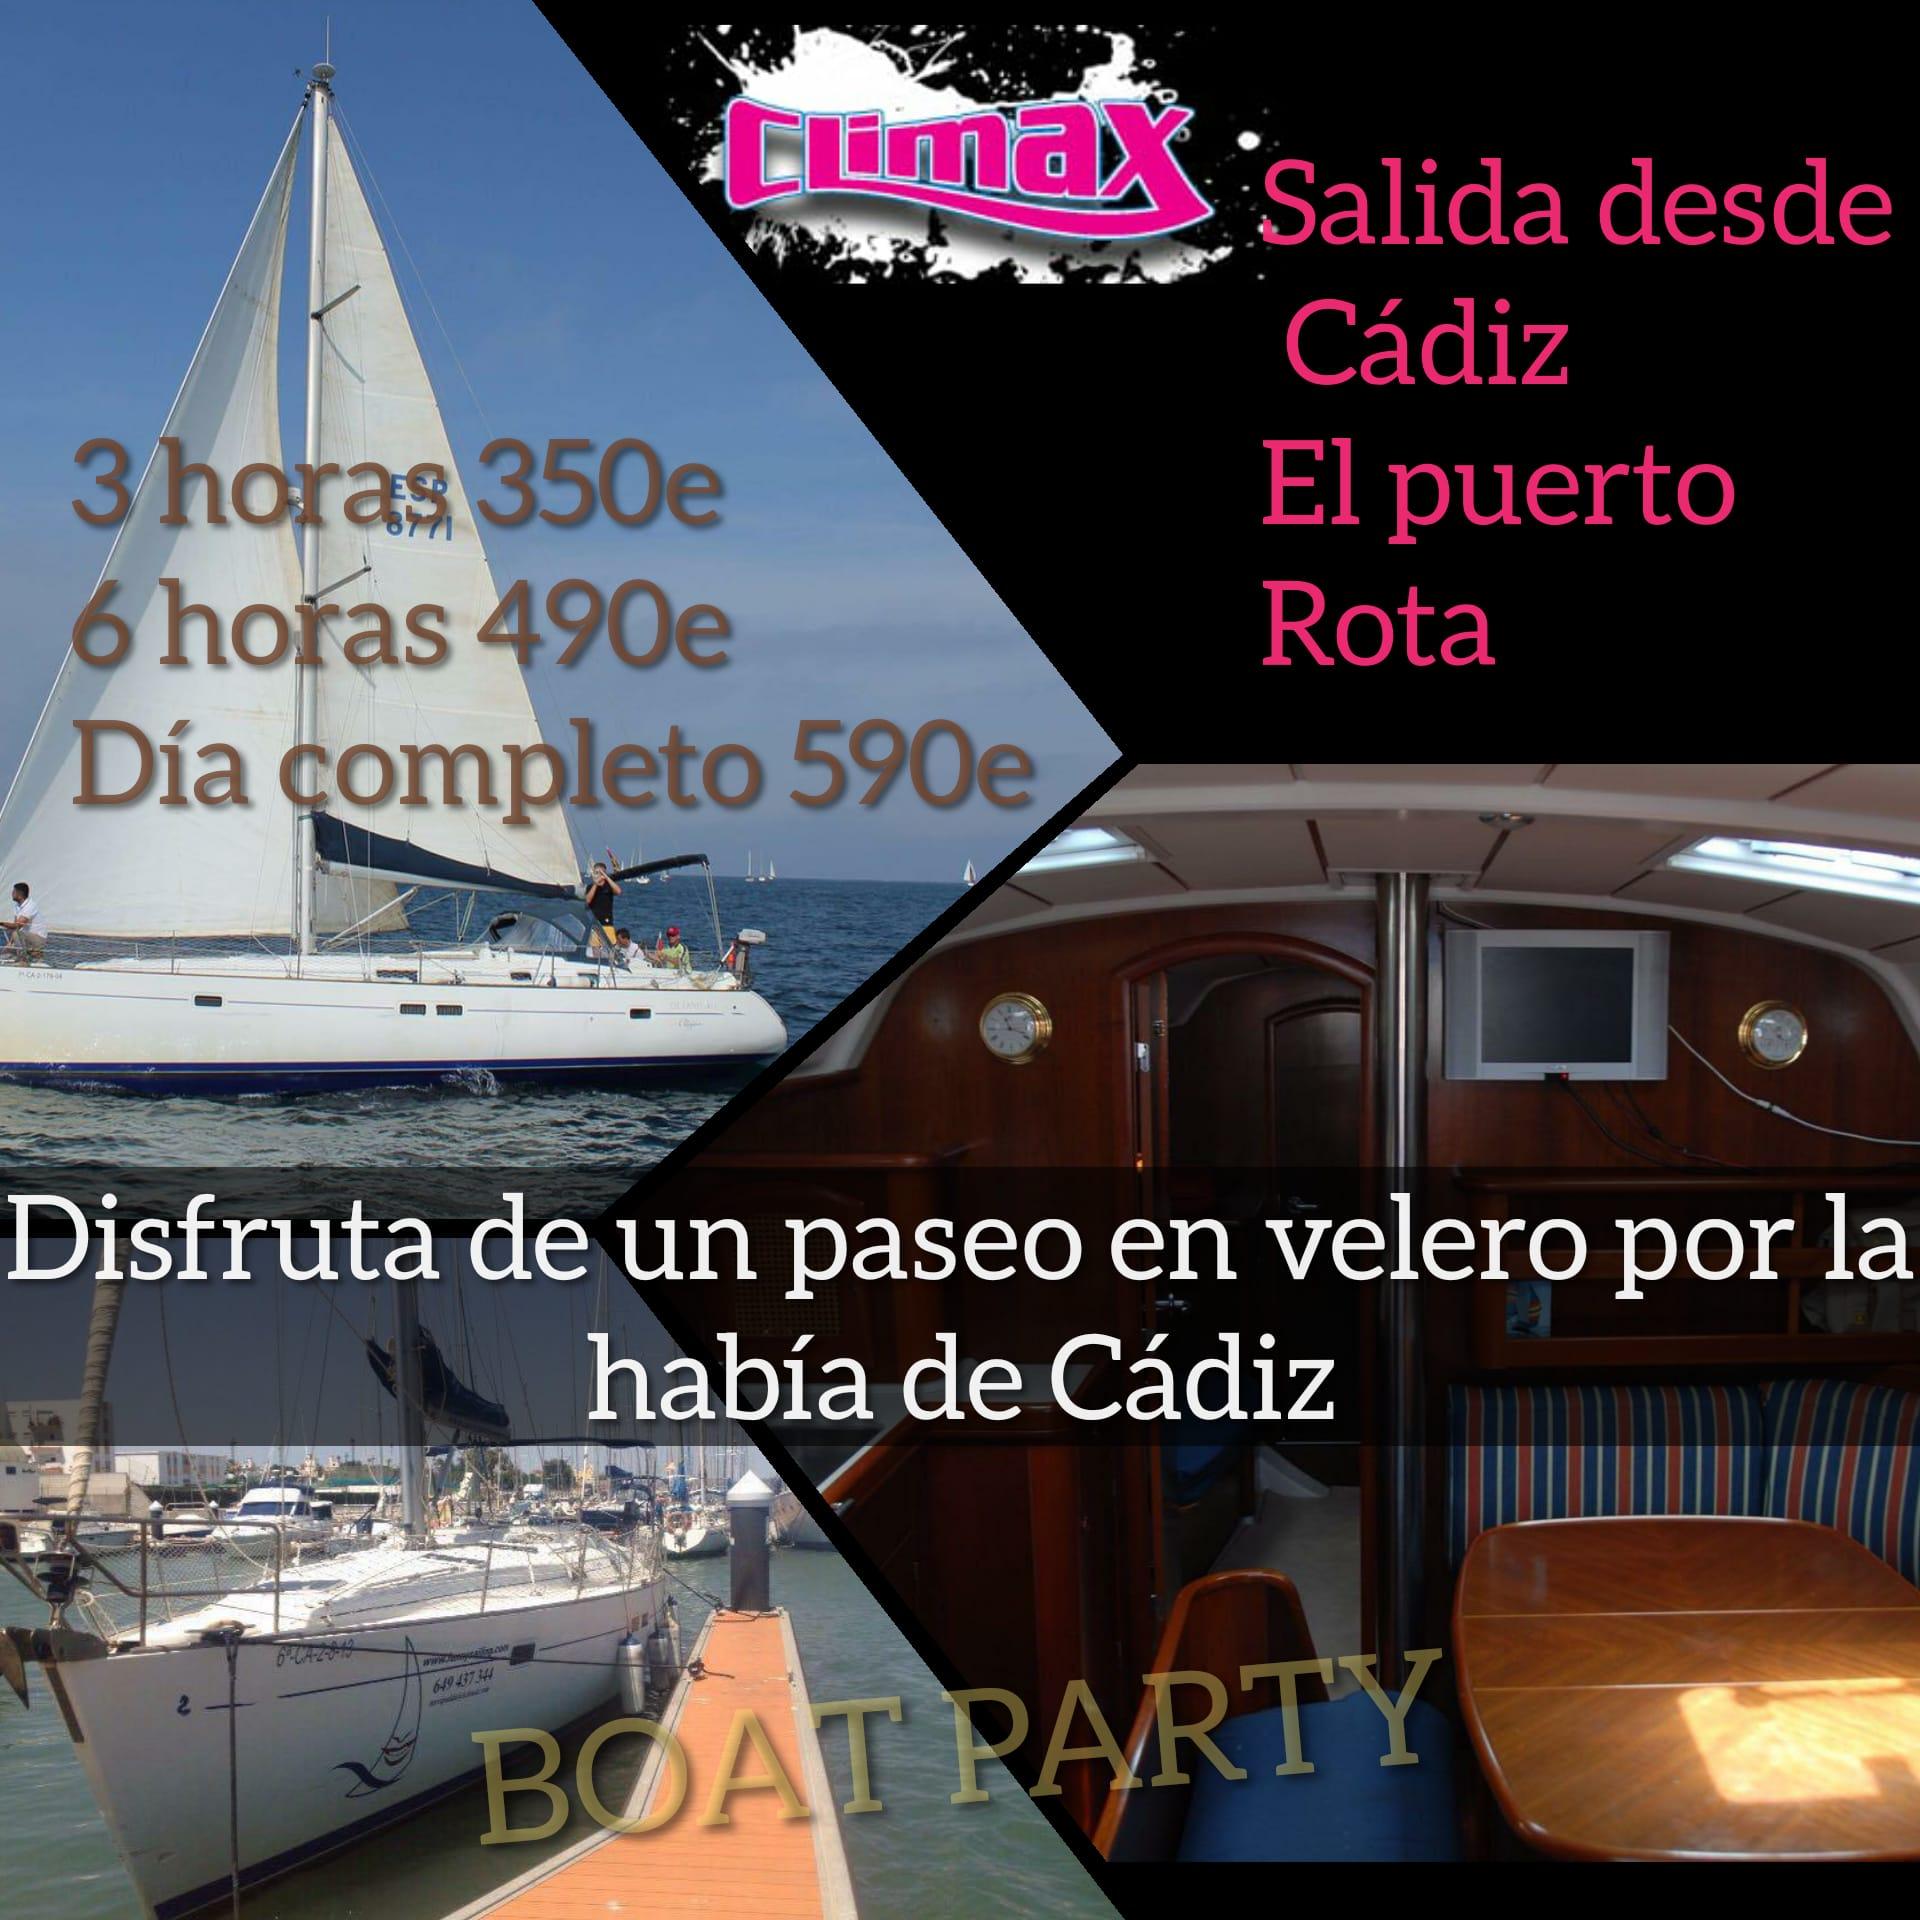 Boat party Cádiz